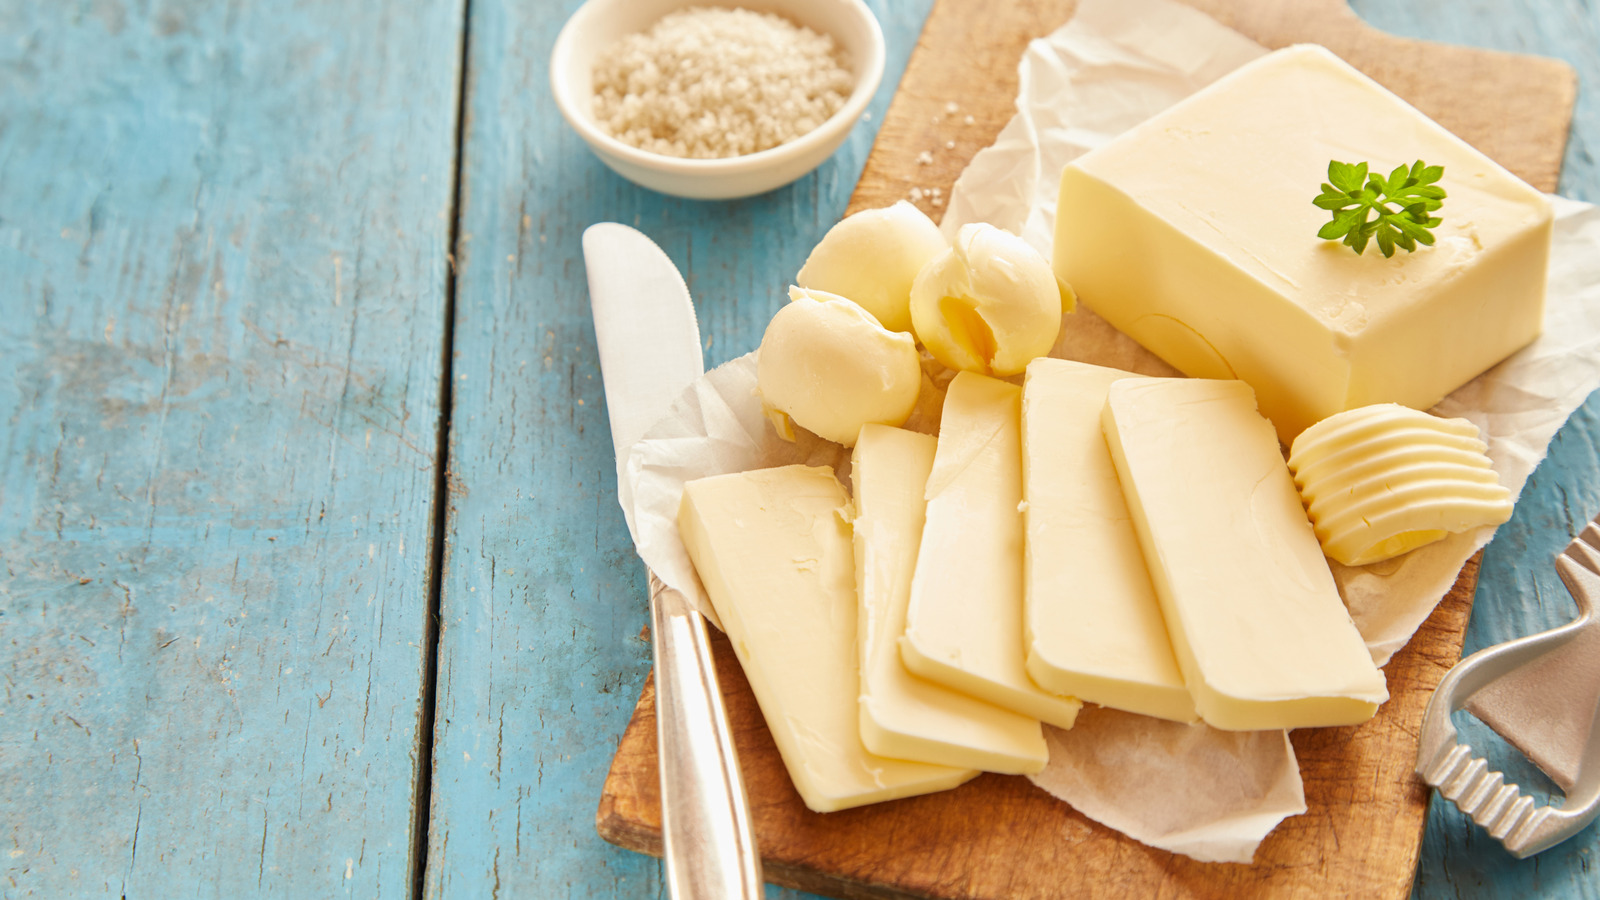 Ghee: Is It Healthier Than Regular Butter?